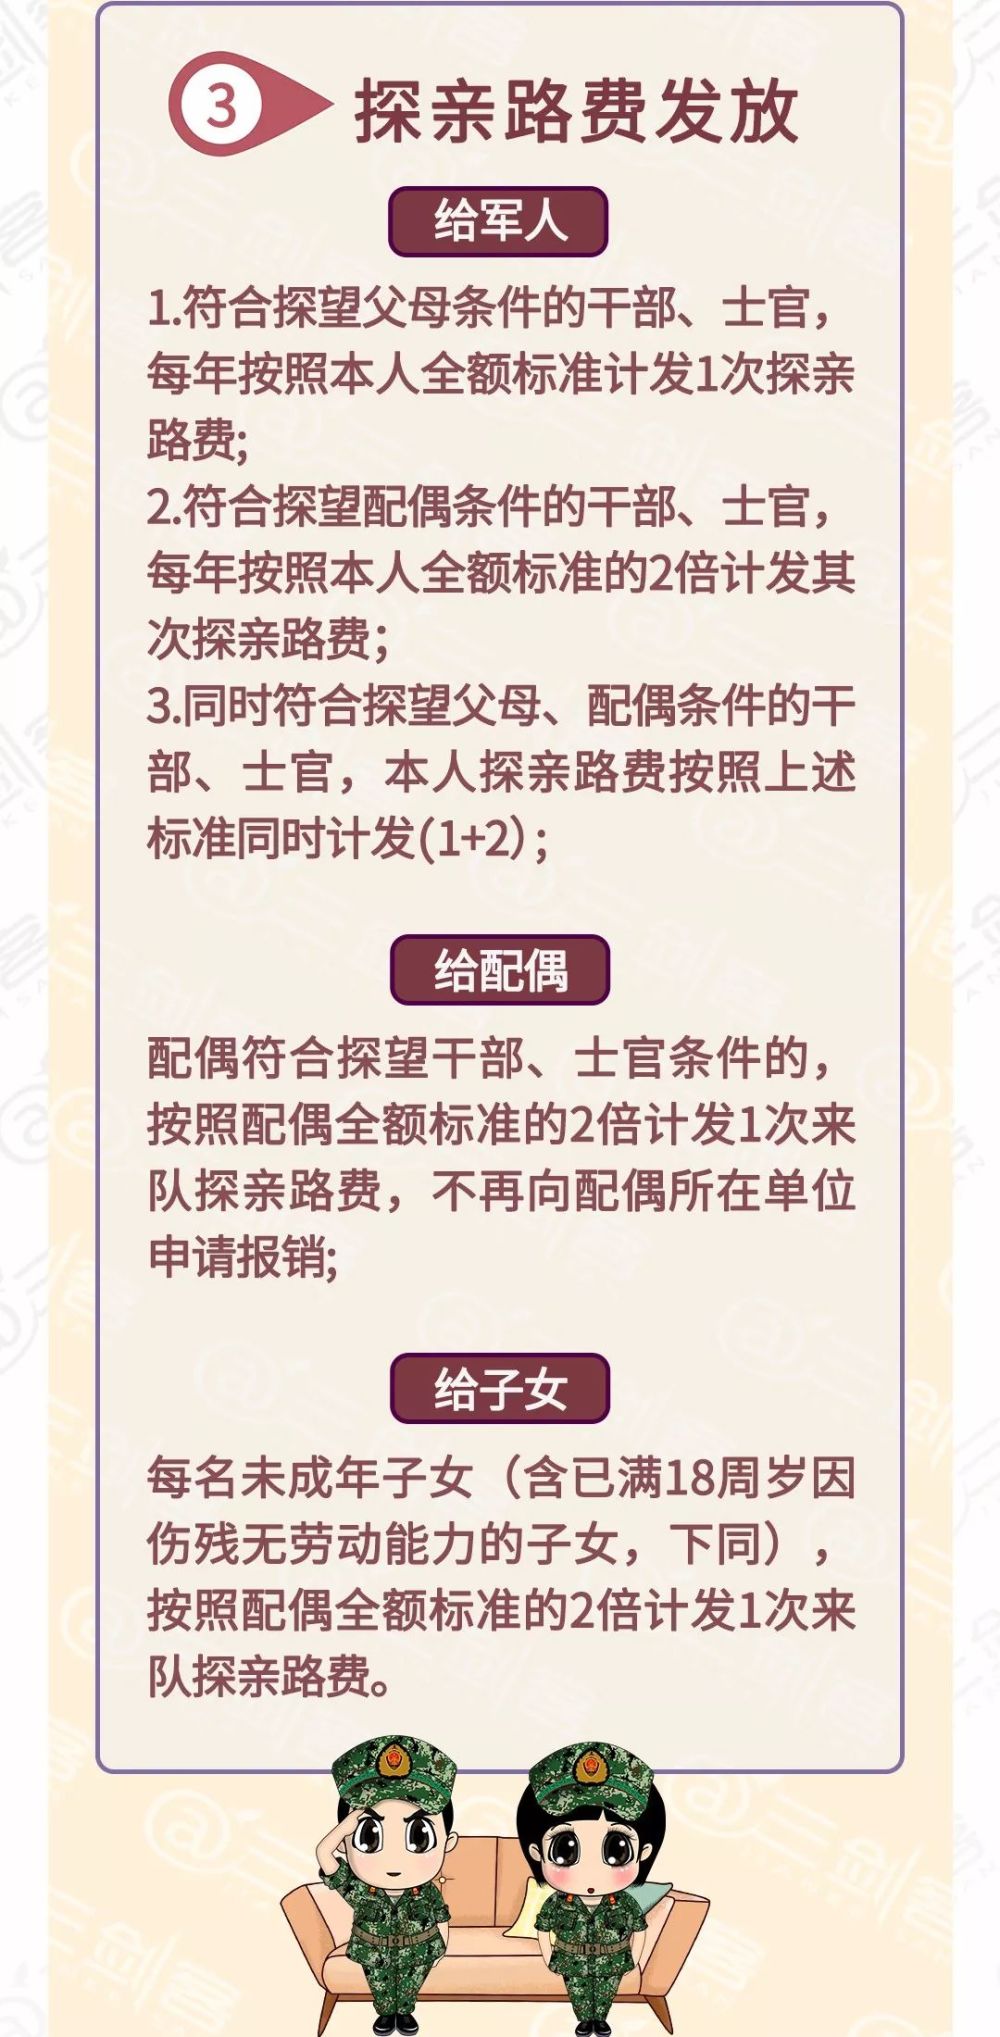 椒盐脆豆腐的做法一件万元华润江中药业汉沽公安局长是谁